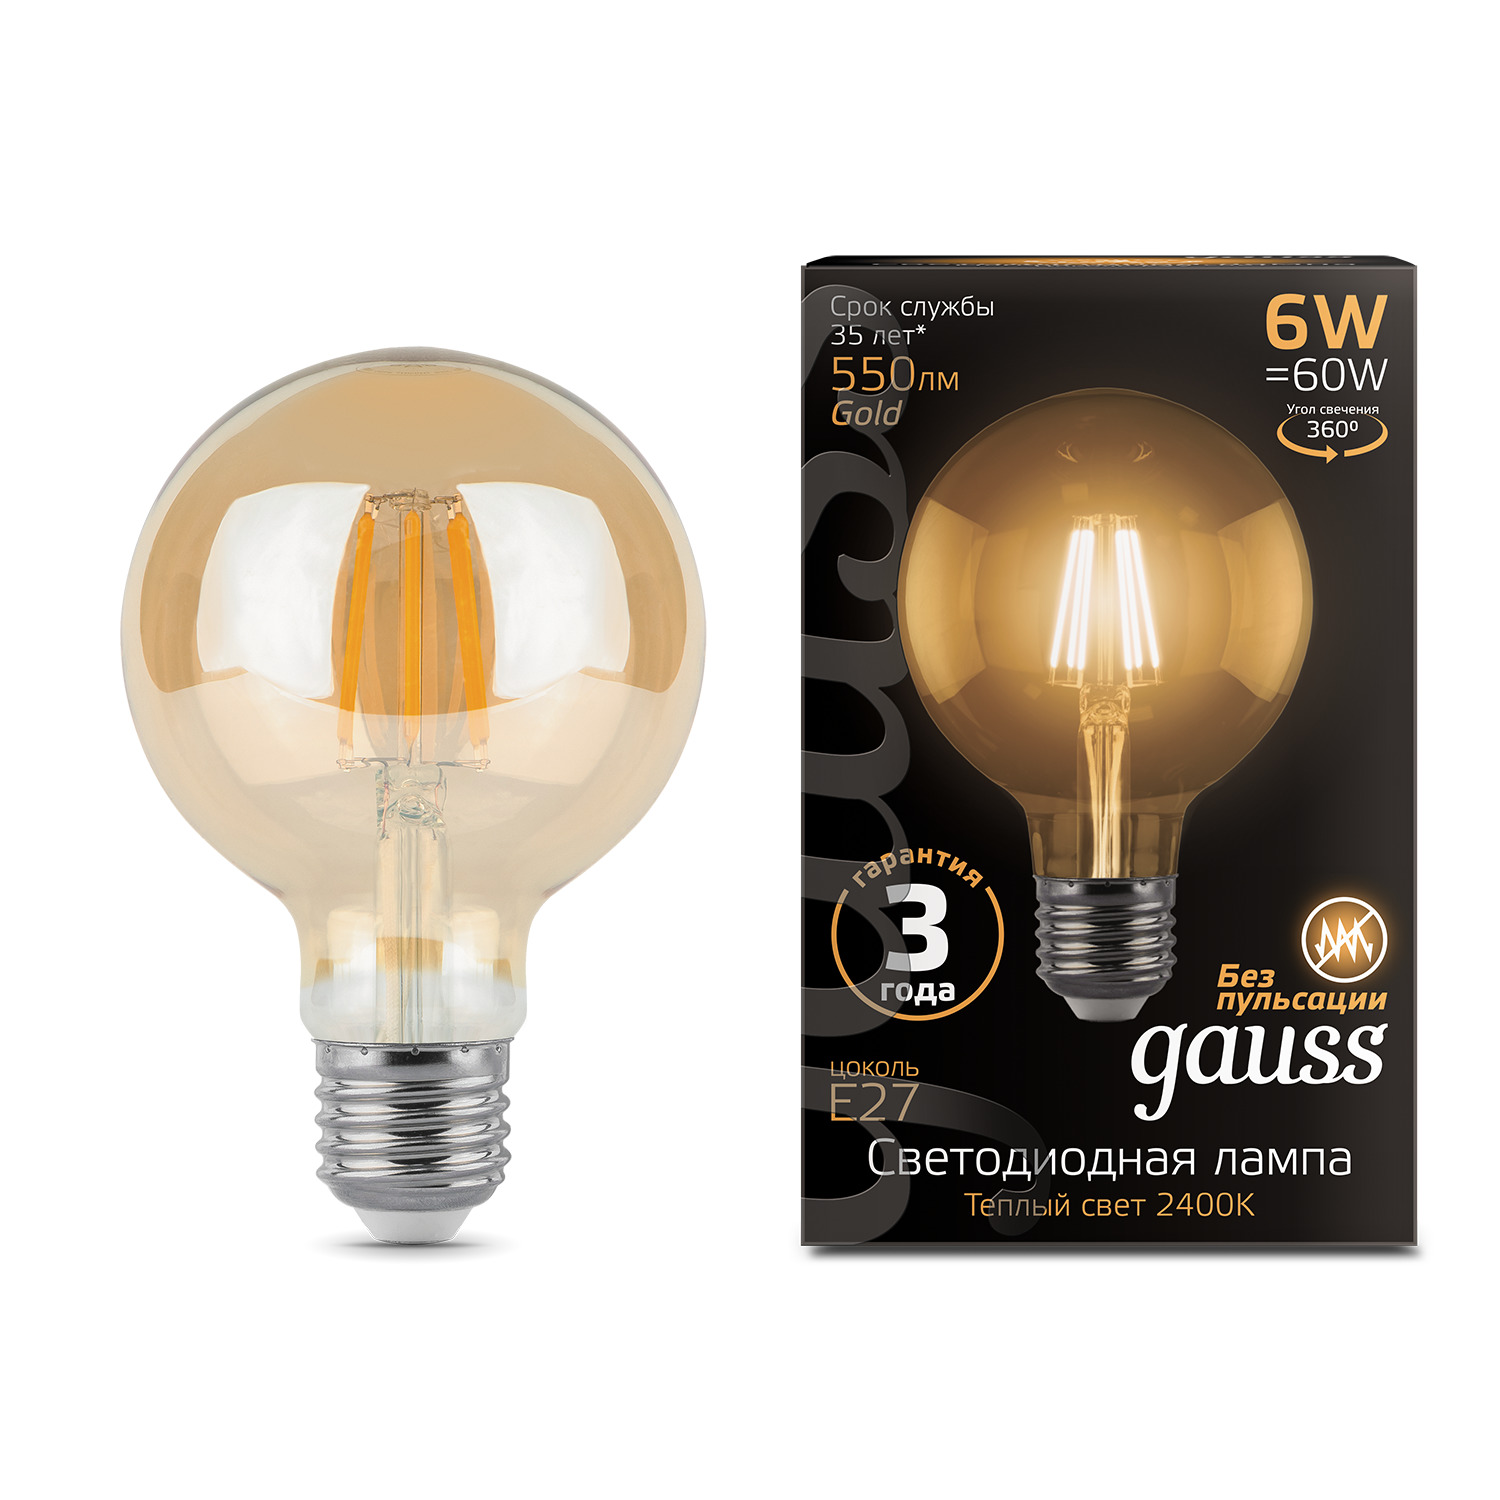 Лампа Gauss LED Filament G95 E27 6W Golden 550lm 2400K 1/20 светильники gauss лампа filament led диммируемаяgolden е27 g95 6w 620lm 2400к